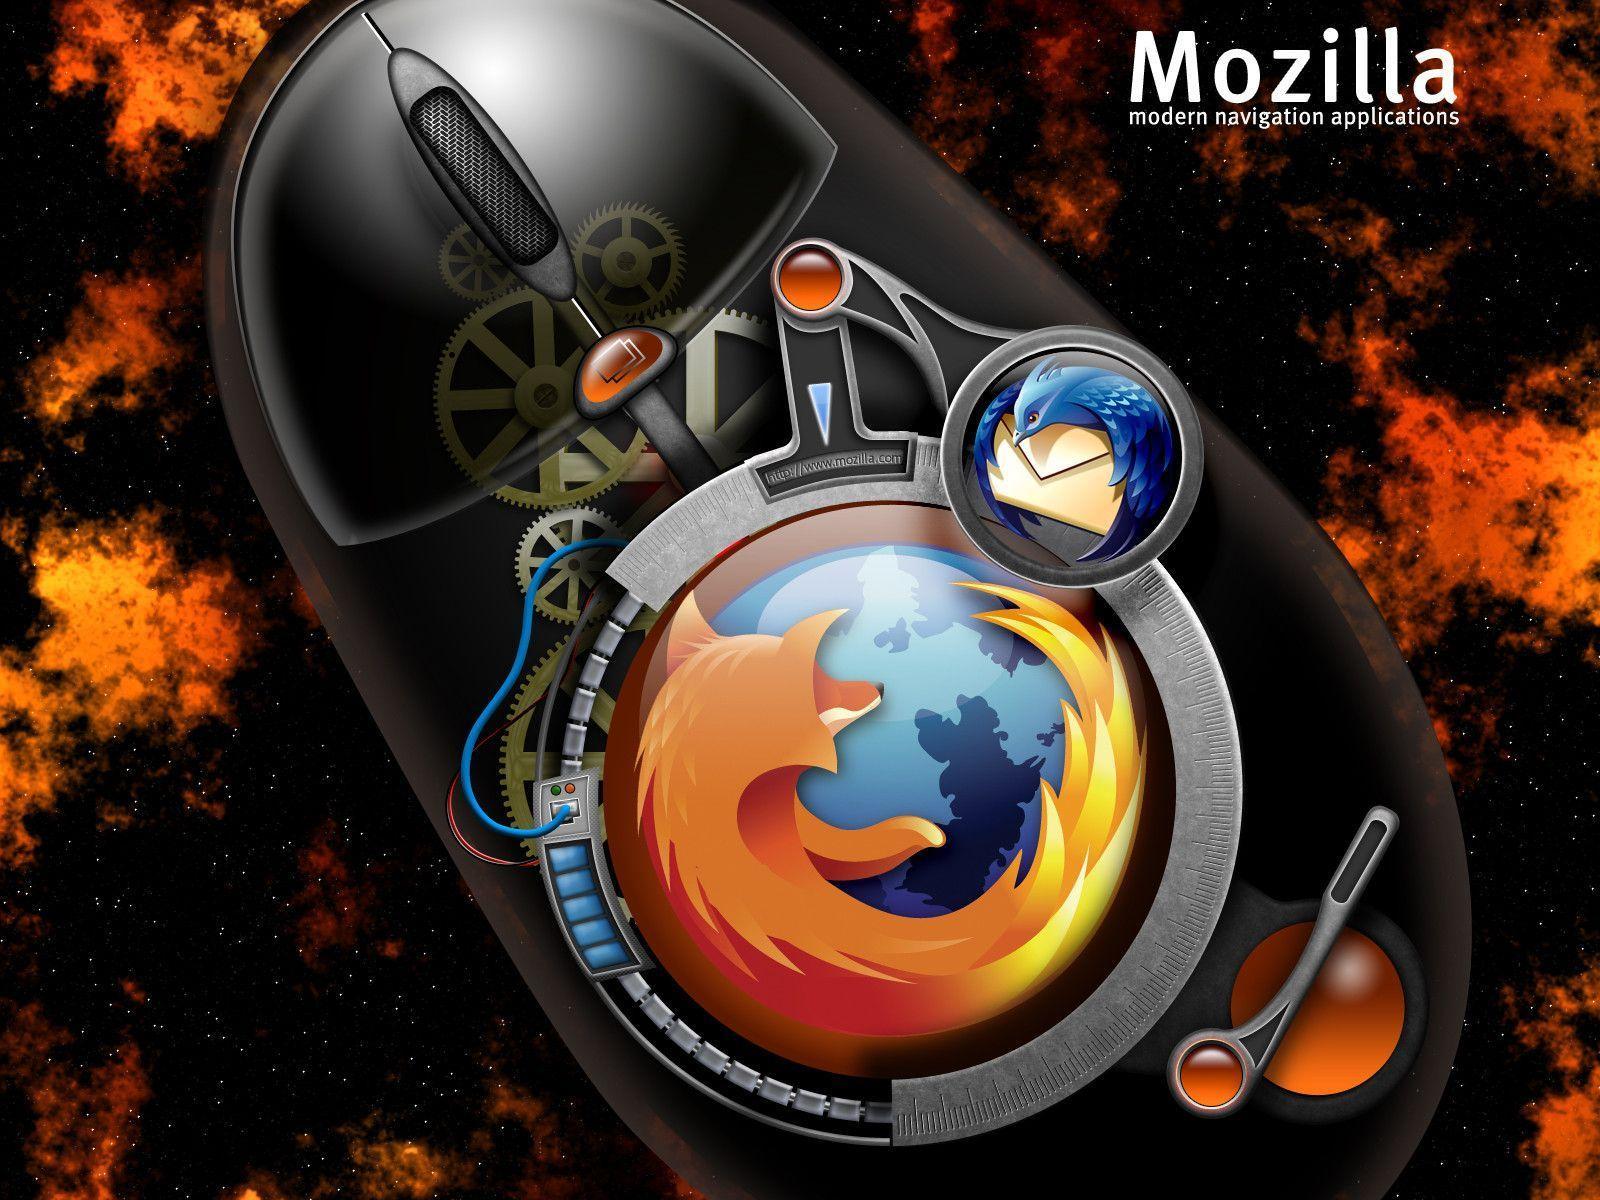 Cool 3D Mozilla Firefox Wallpaper Wallpaper. lookwallpaper